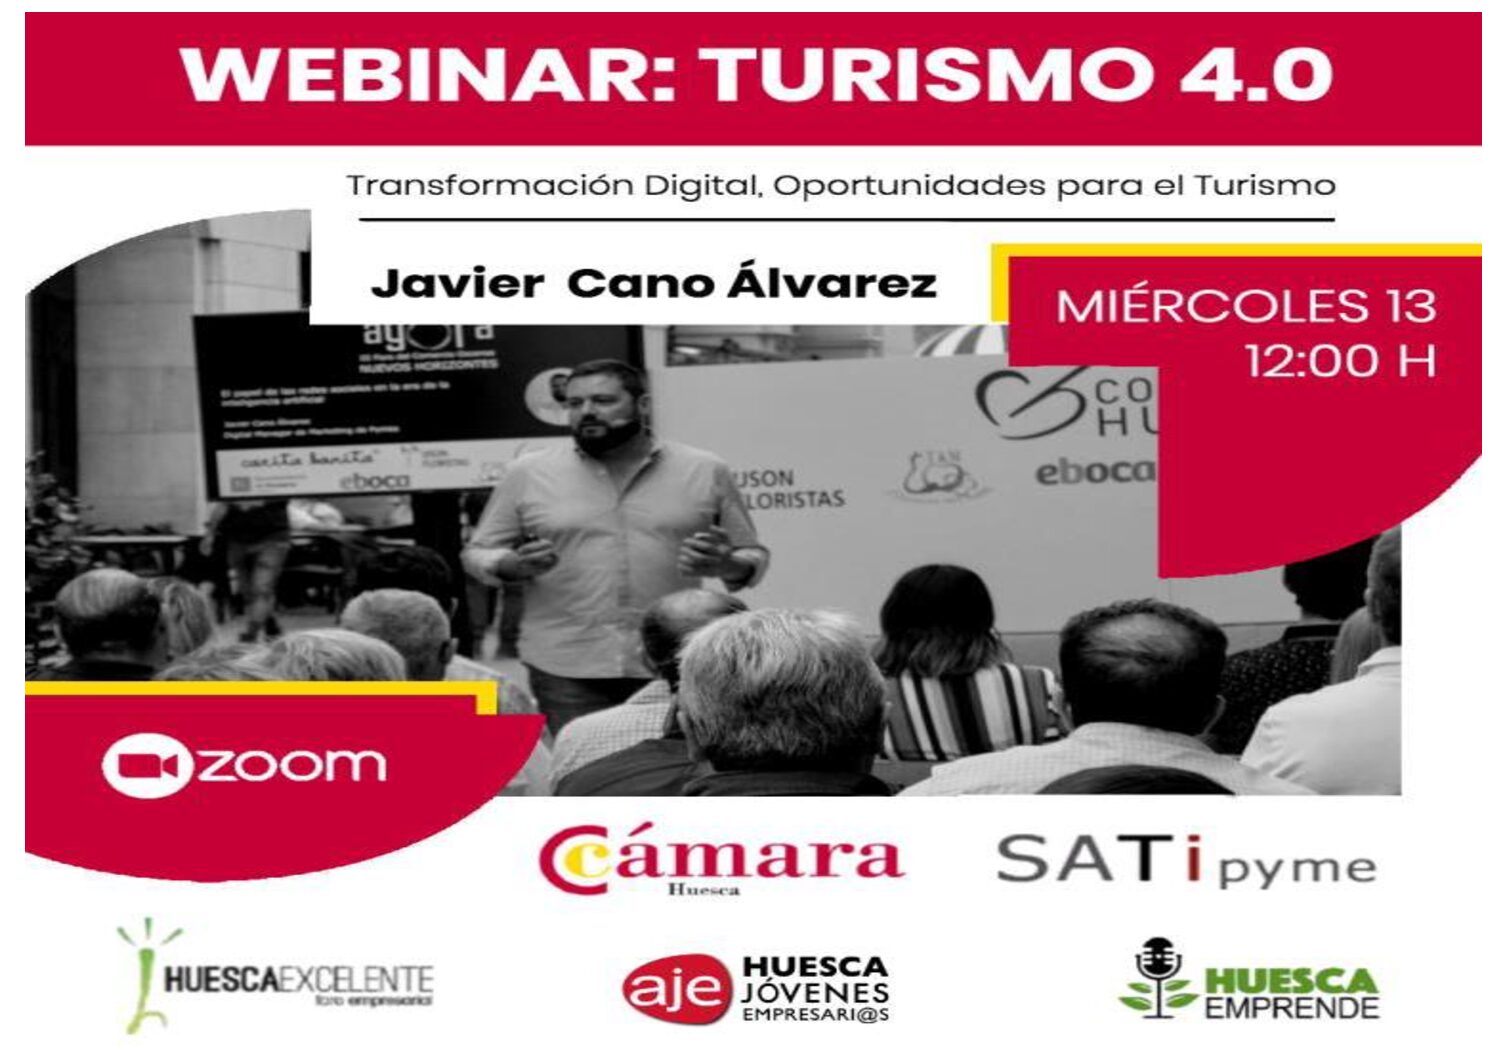 Webinar: TURISMO 4.0. Transformación digital, oportunidades para el turismo.